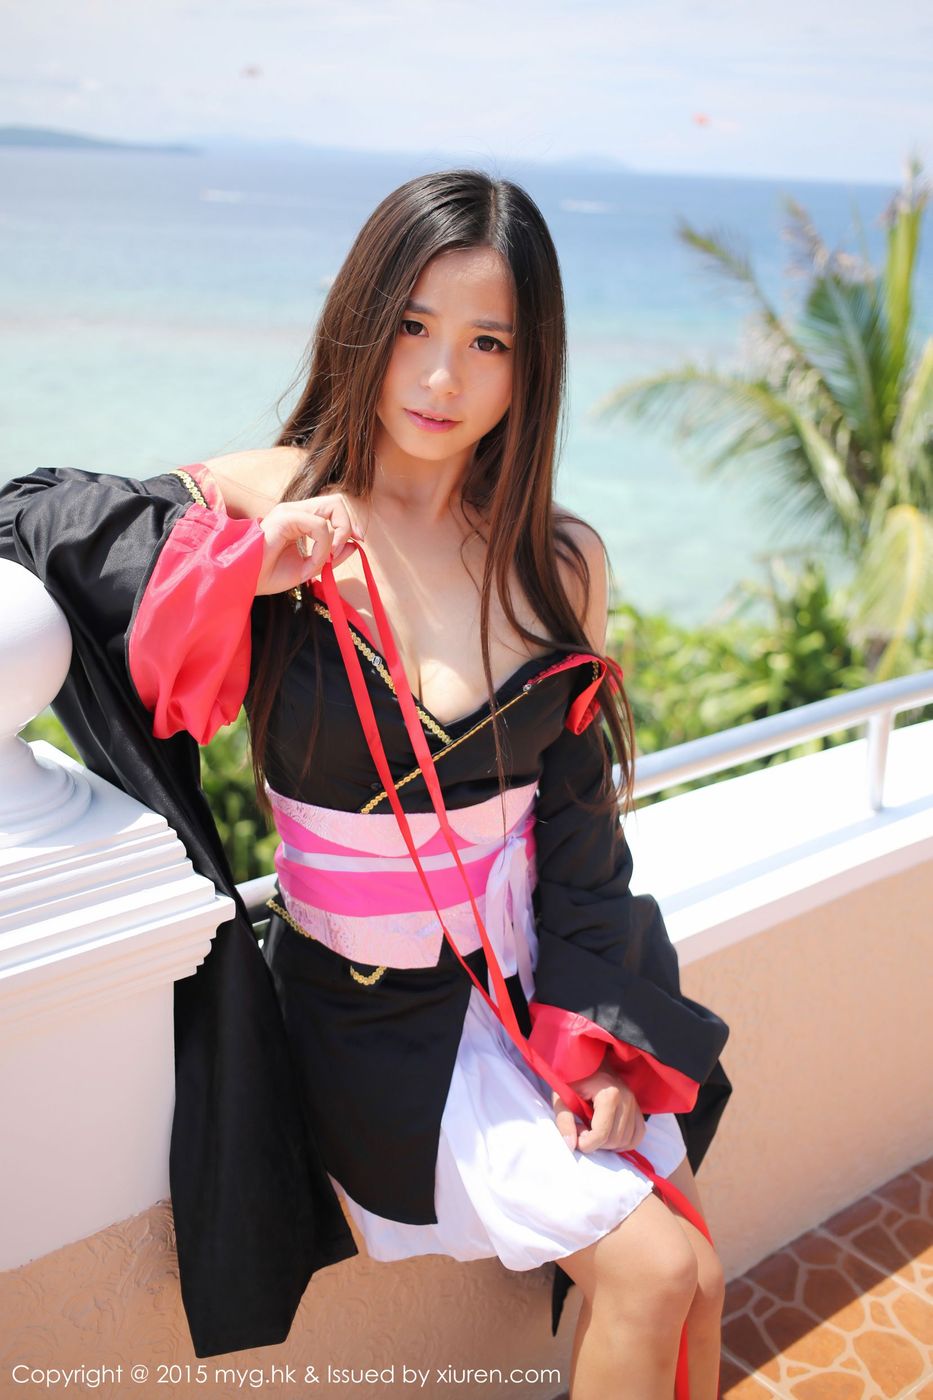 美媛馆美女模特Moa小姐沙滩和服主题菲律宾长滩诱惑旅拍